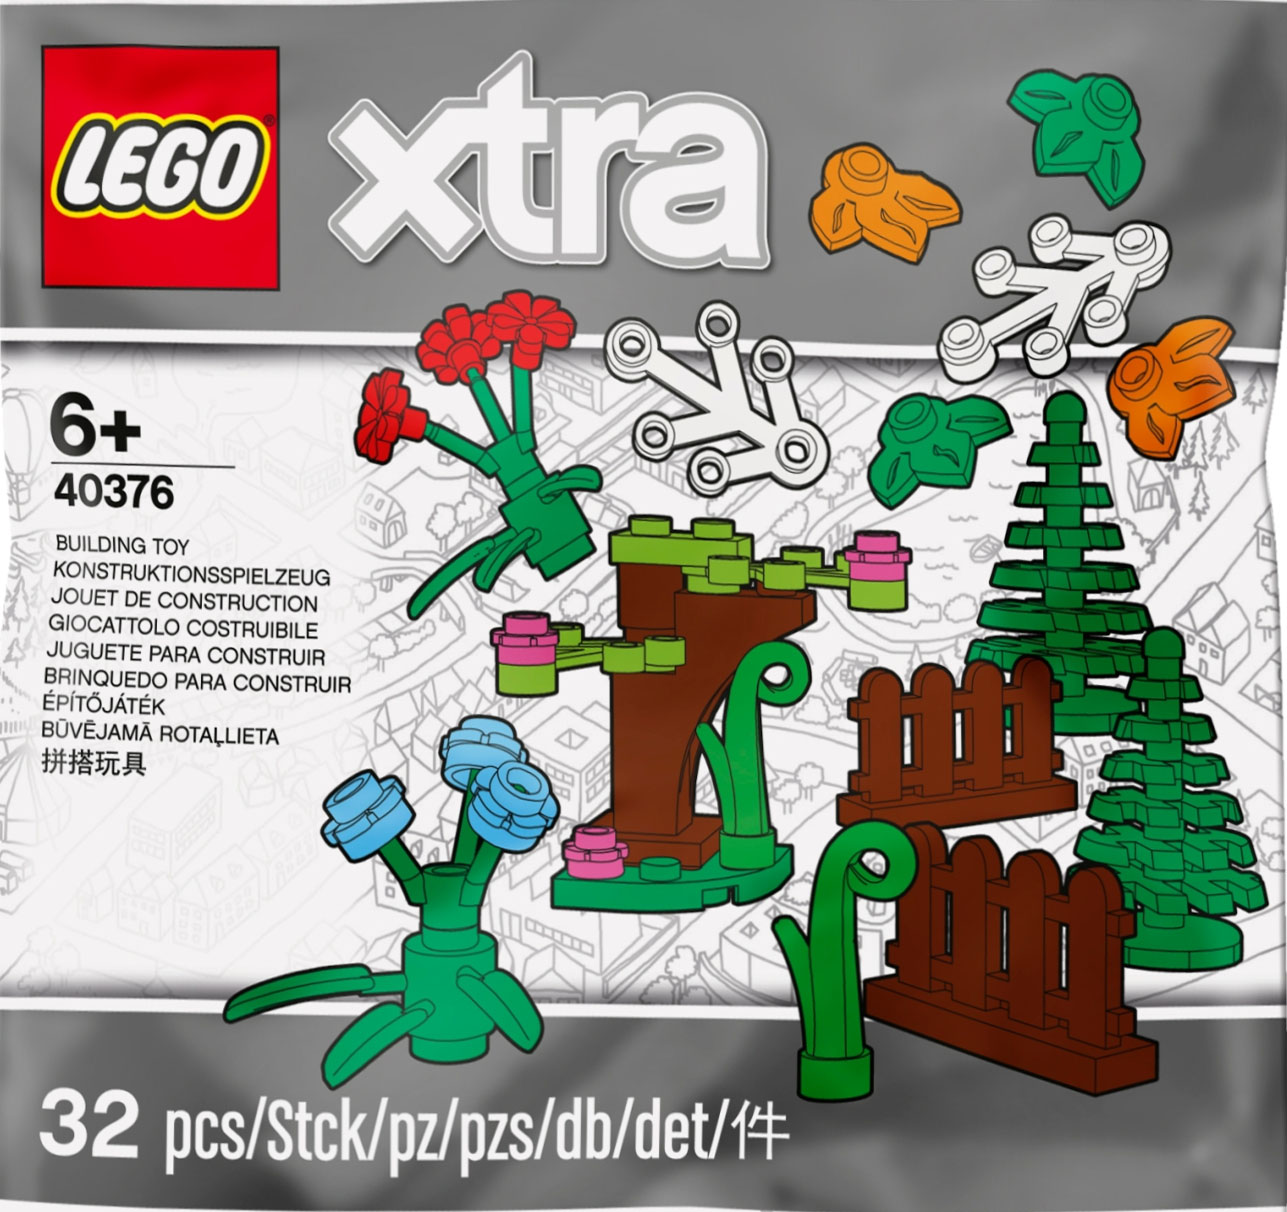 40376 Botanical Accessories レゴの商品情報 レゴの説明書・組立方法 レゴ商品レビュー動画